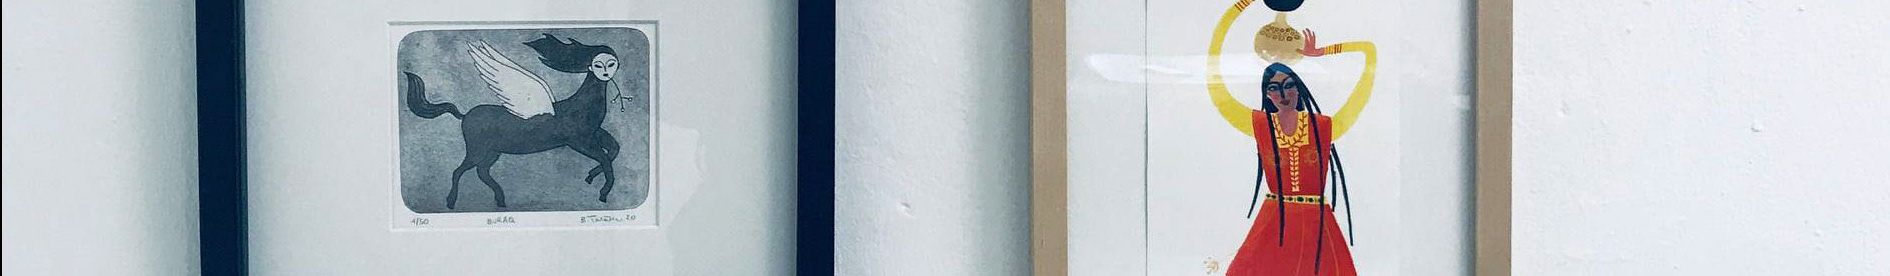 bianca tschaikner's profile banner